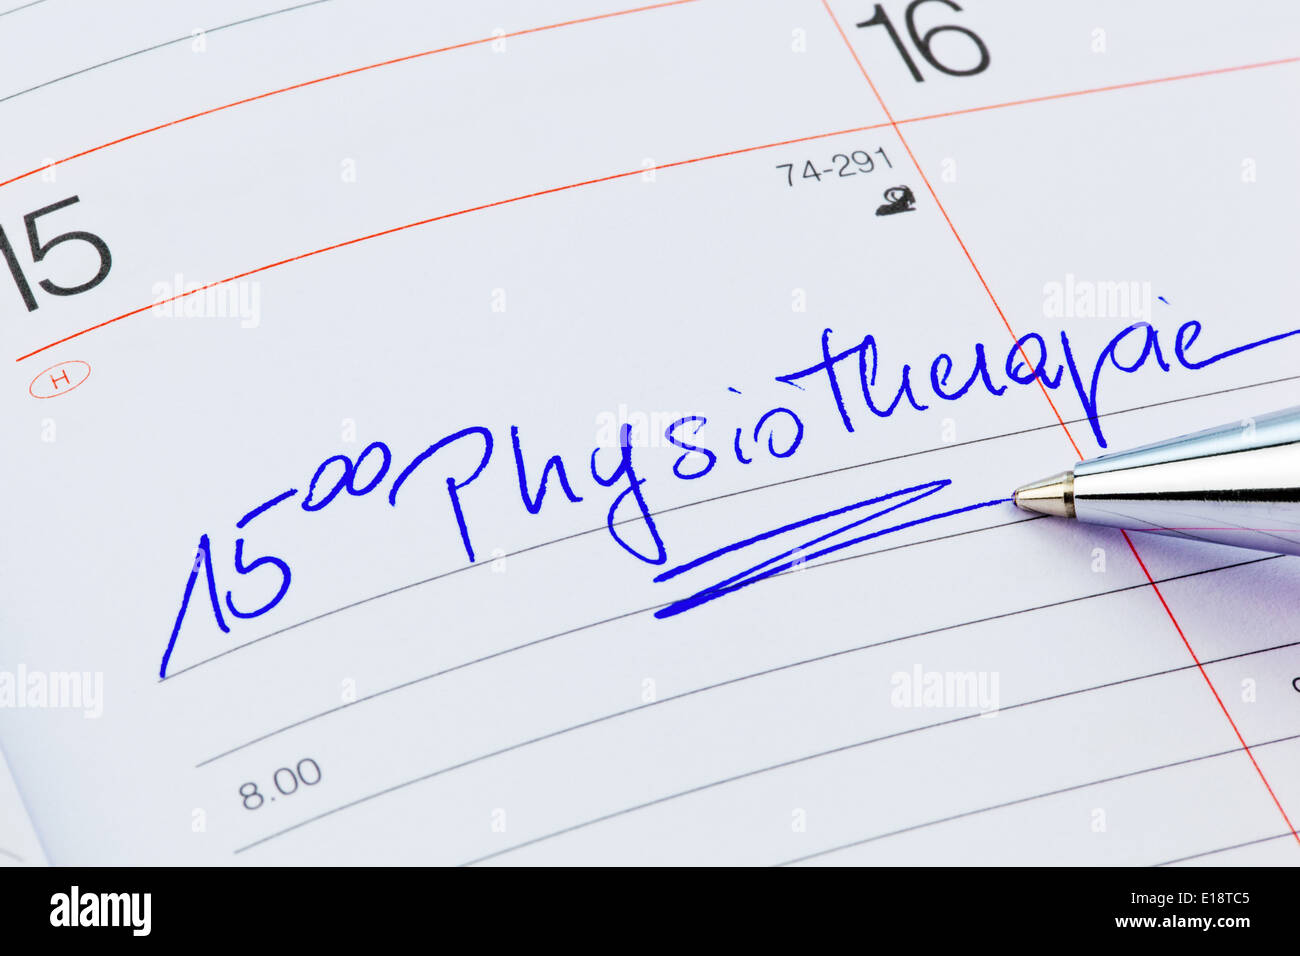 Ein Termin ist in einem Kalender eingetragen: Physiotherapie Stock Photo